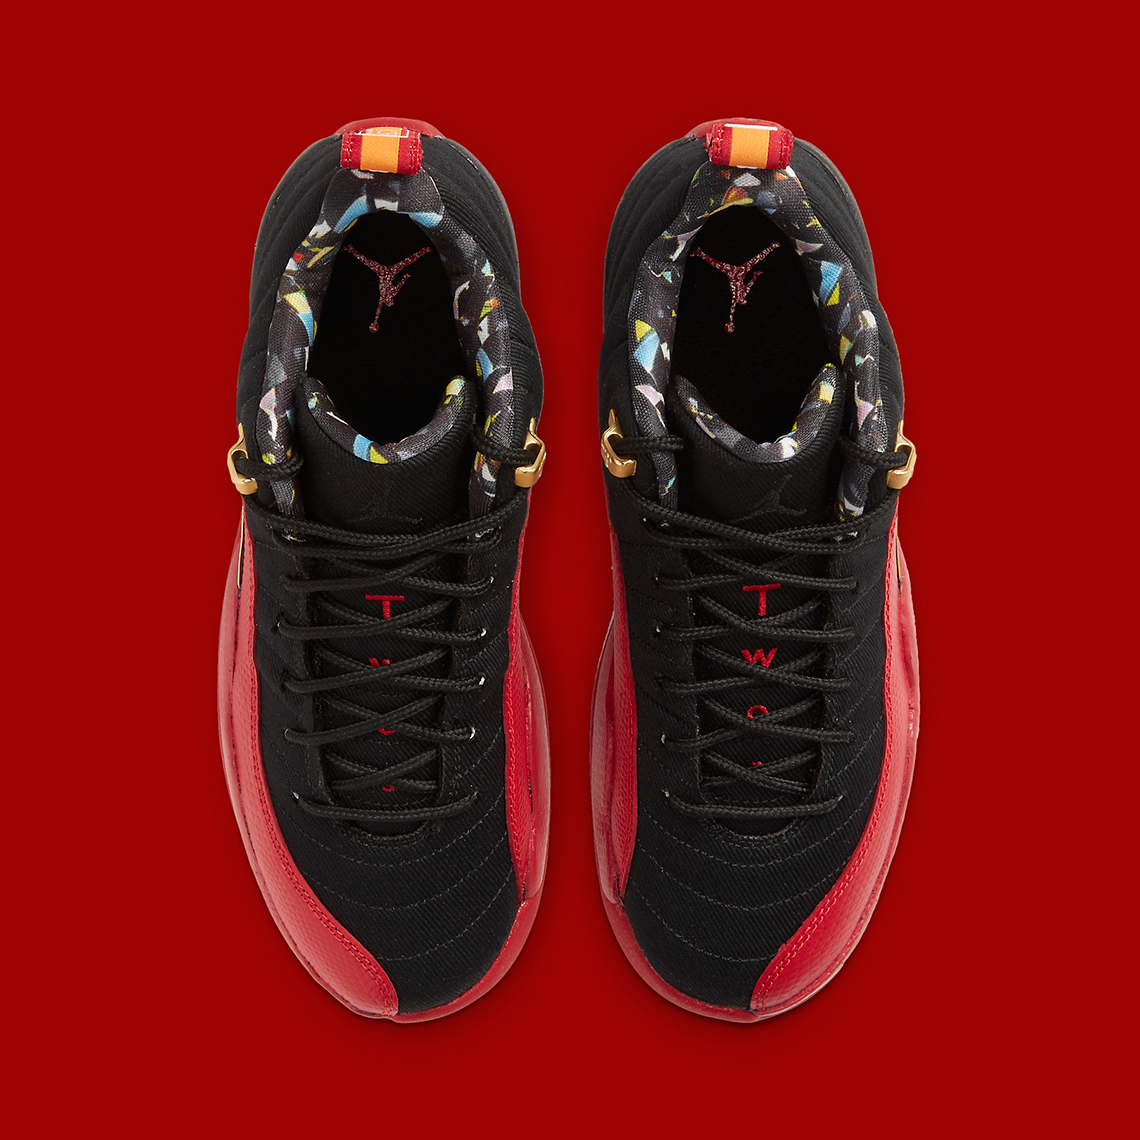 Air Jordan 12 Retro Low “Super Bowl LV”